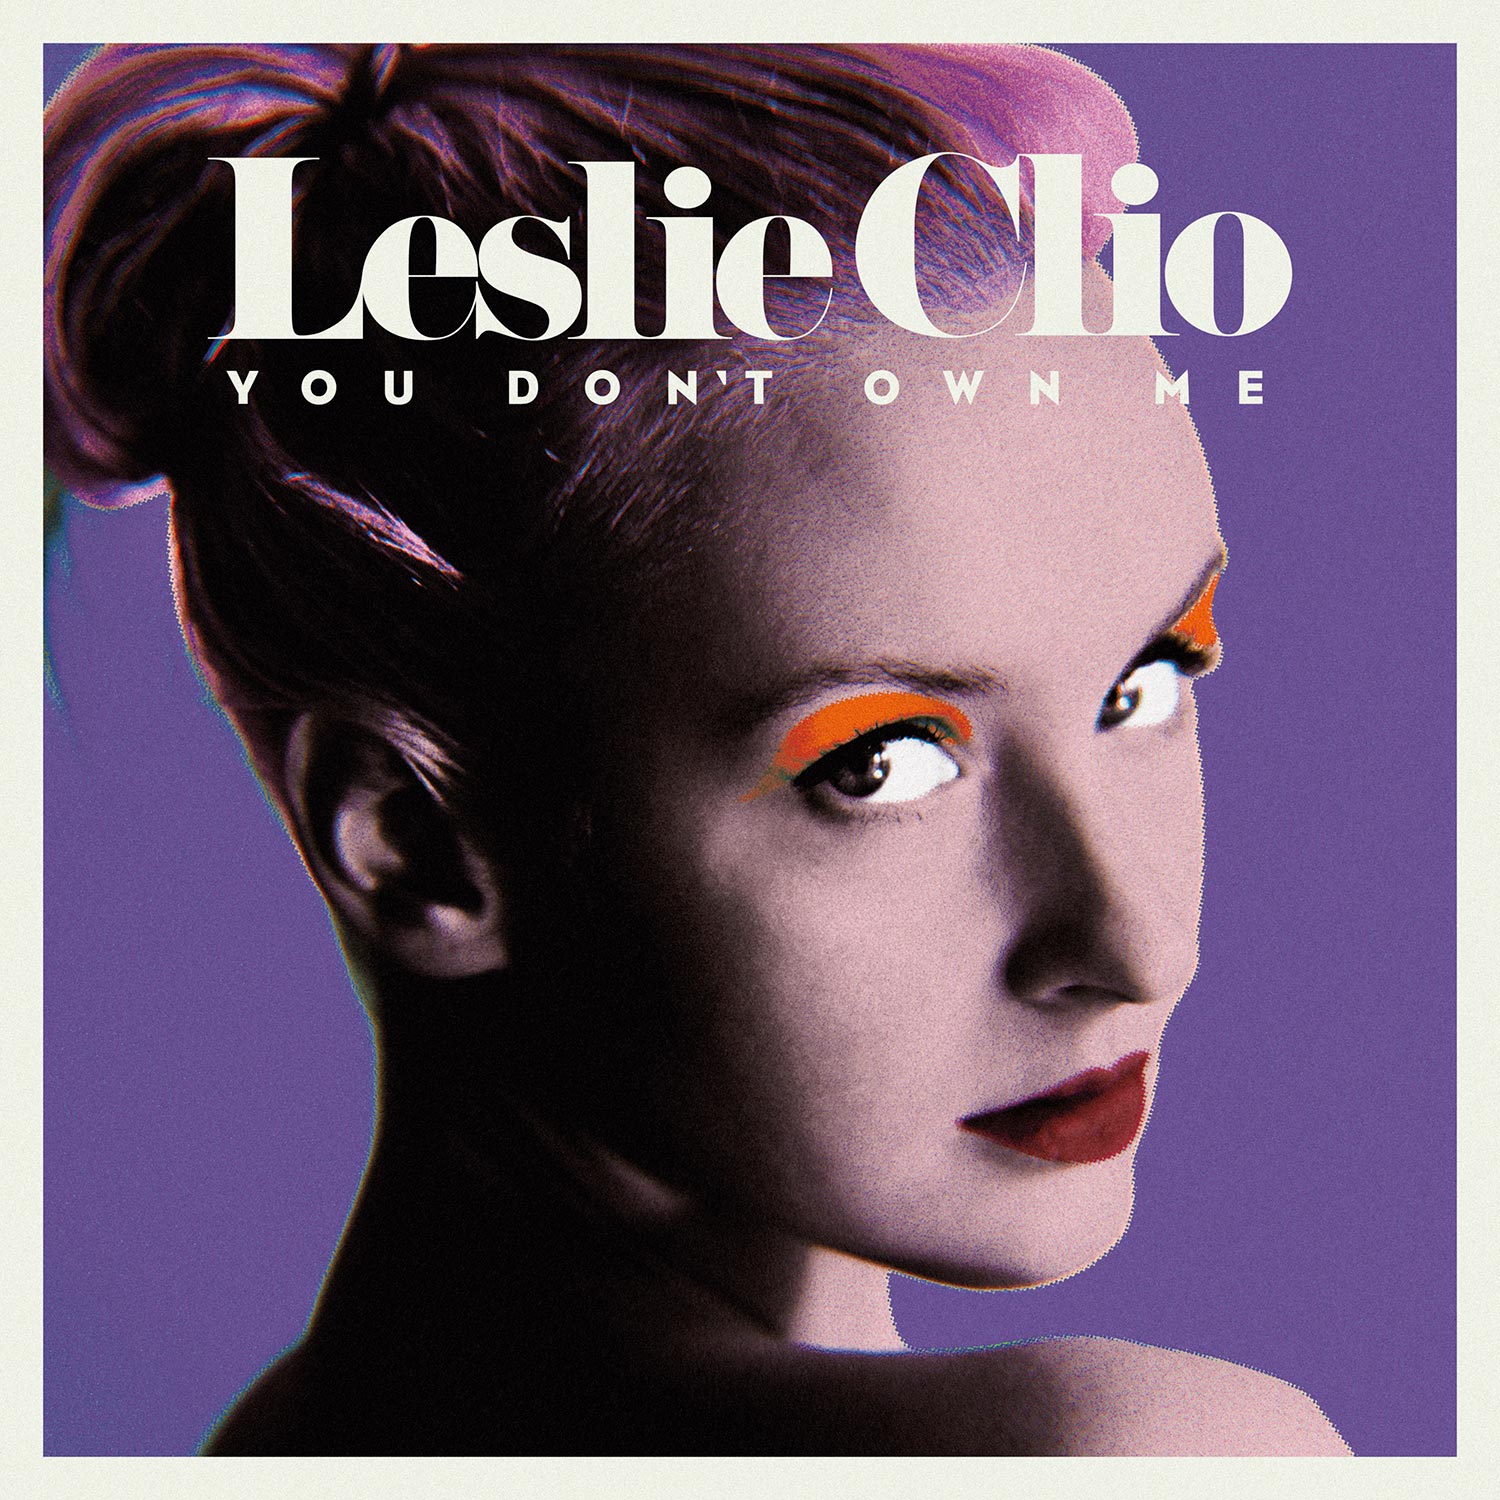 Leslie Clio. Repeat. 9